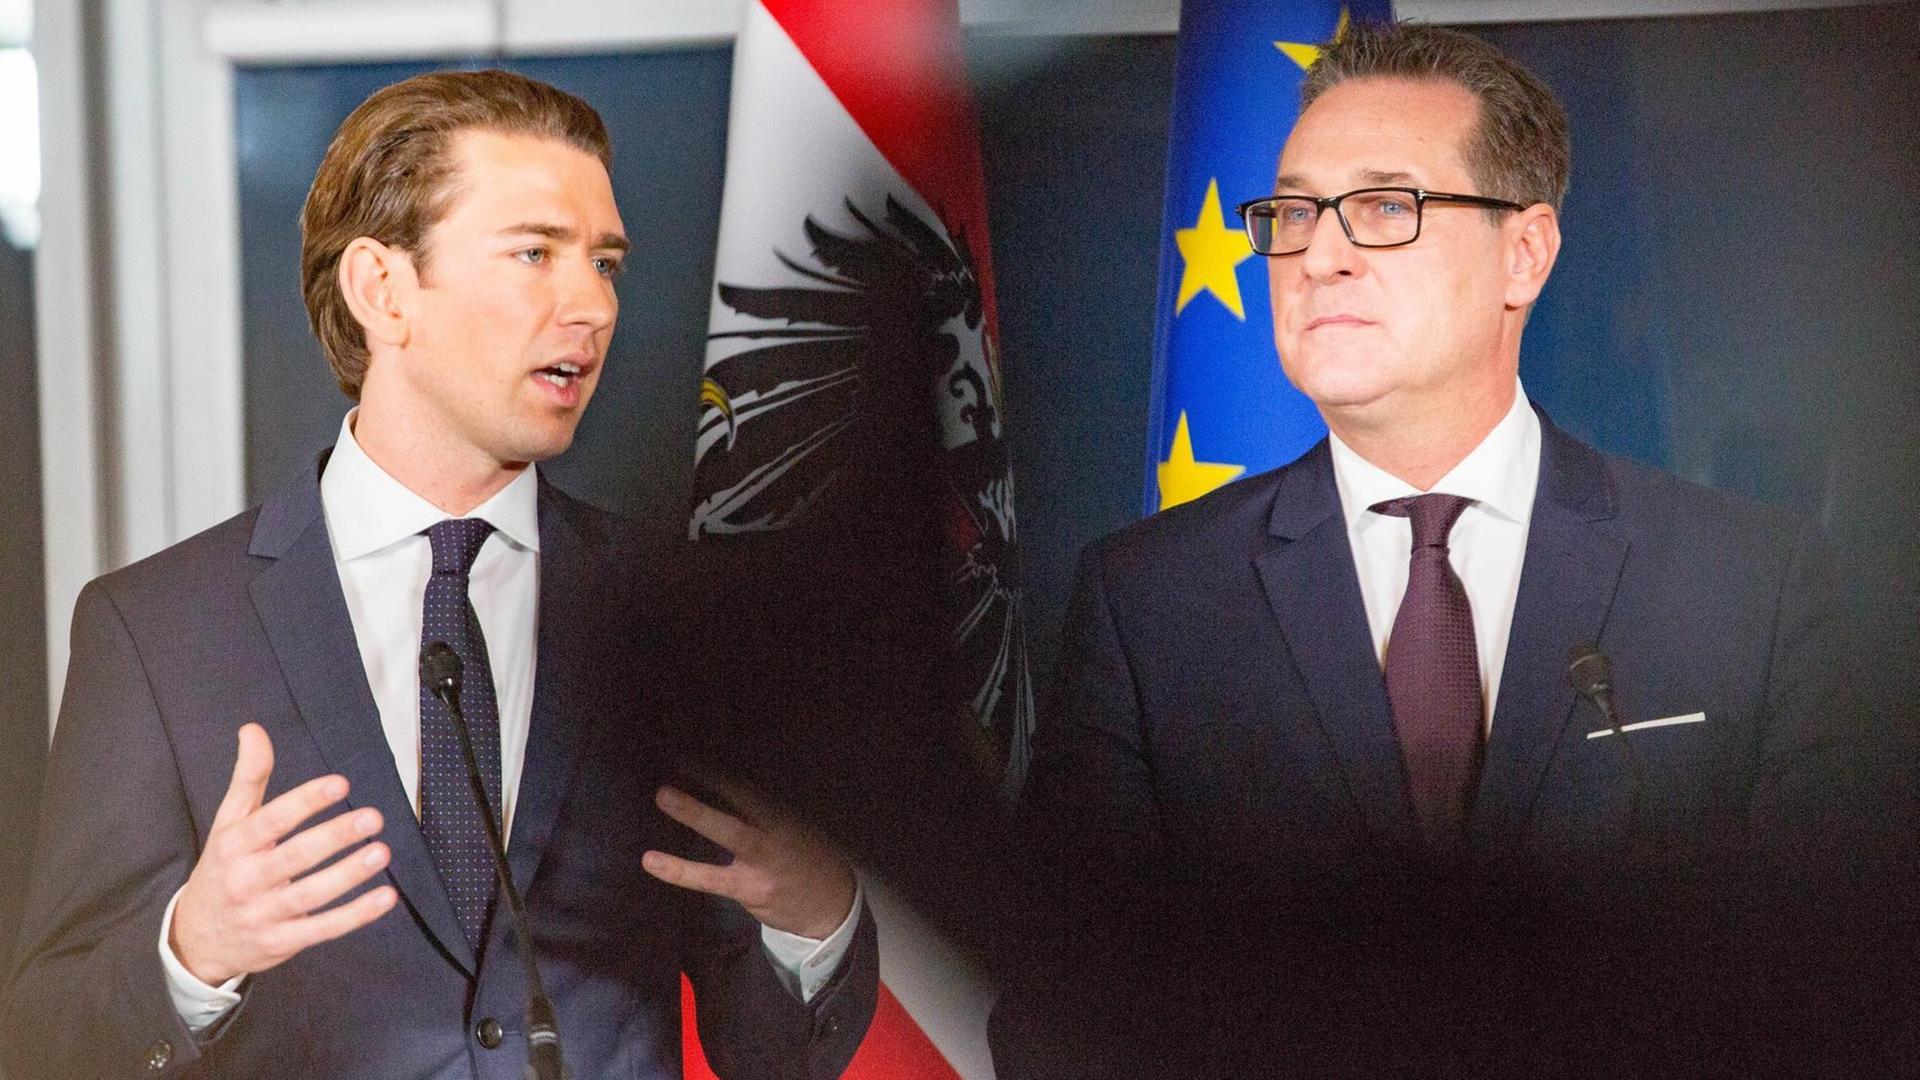 ÖVP-Chef Kurz und der FPÖ-Vorsitzende Strache präsentieren das Regierungsprogramm der sogenannten türkis-blauen Koalition.